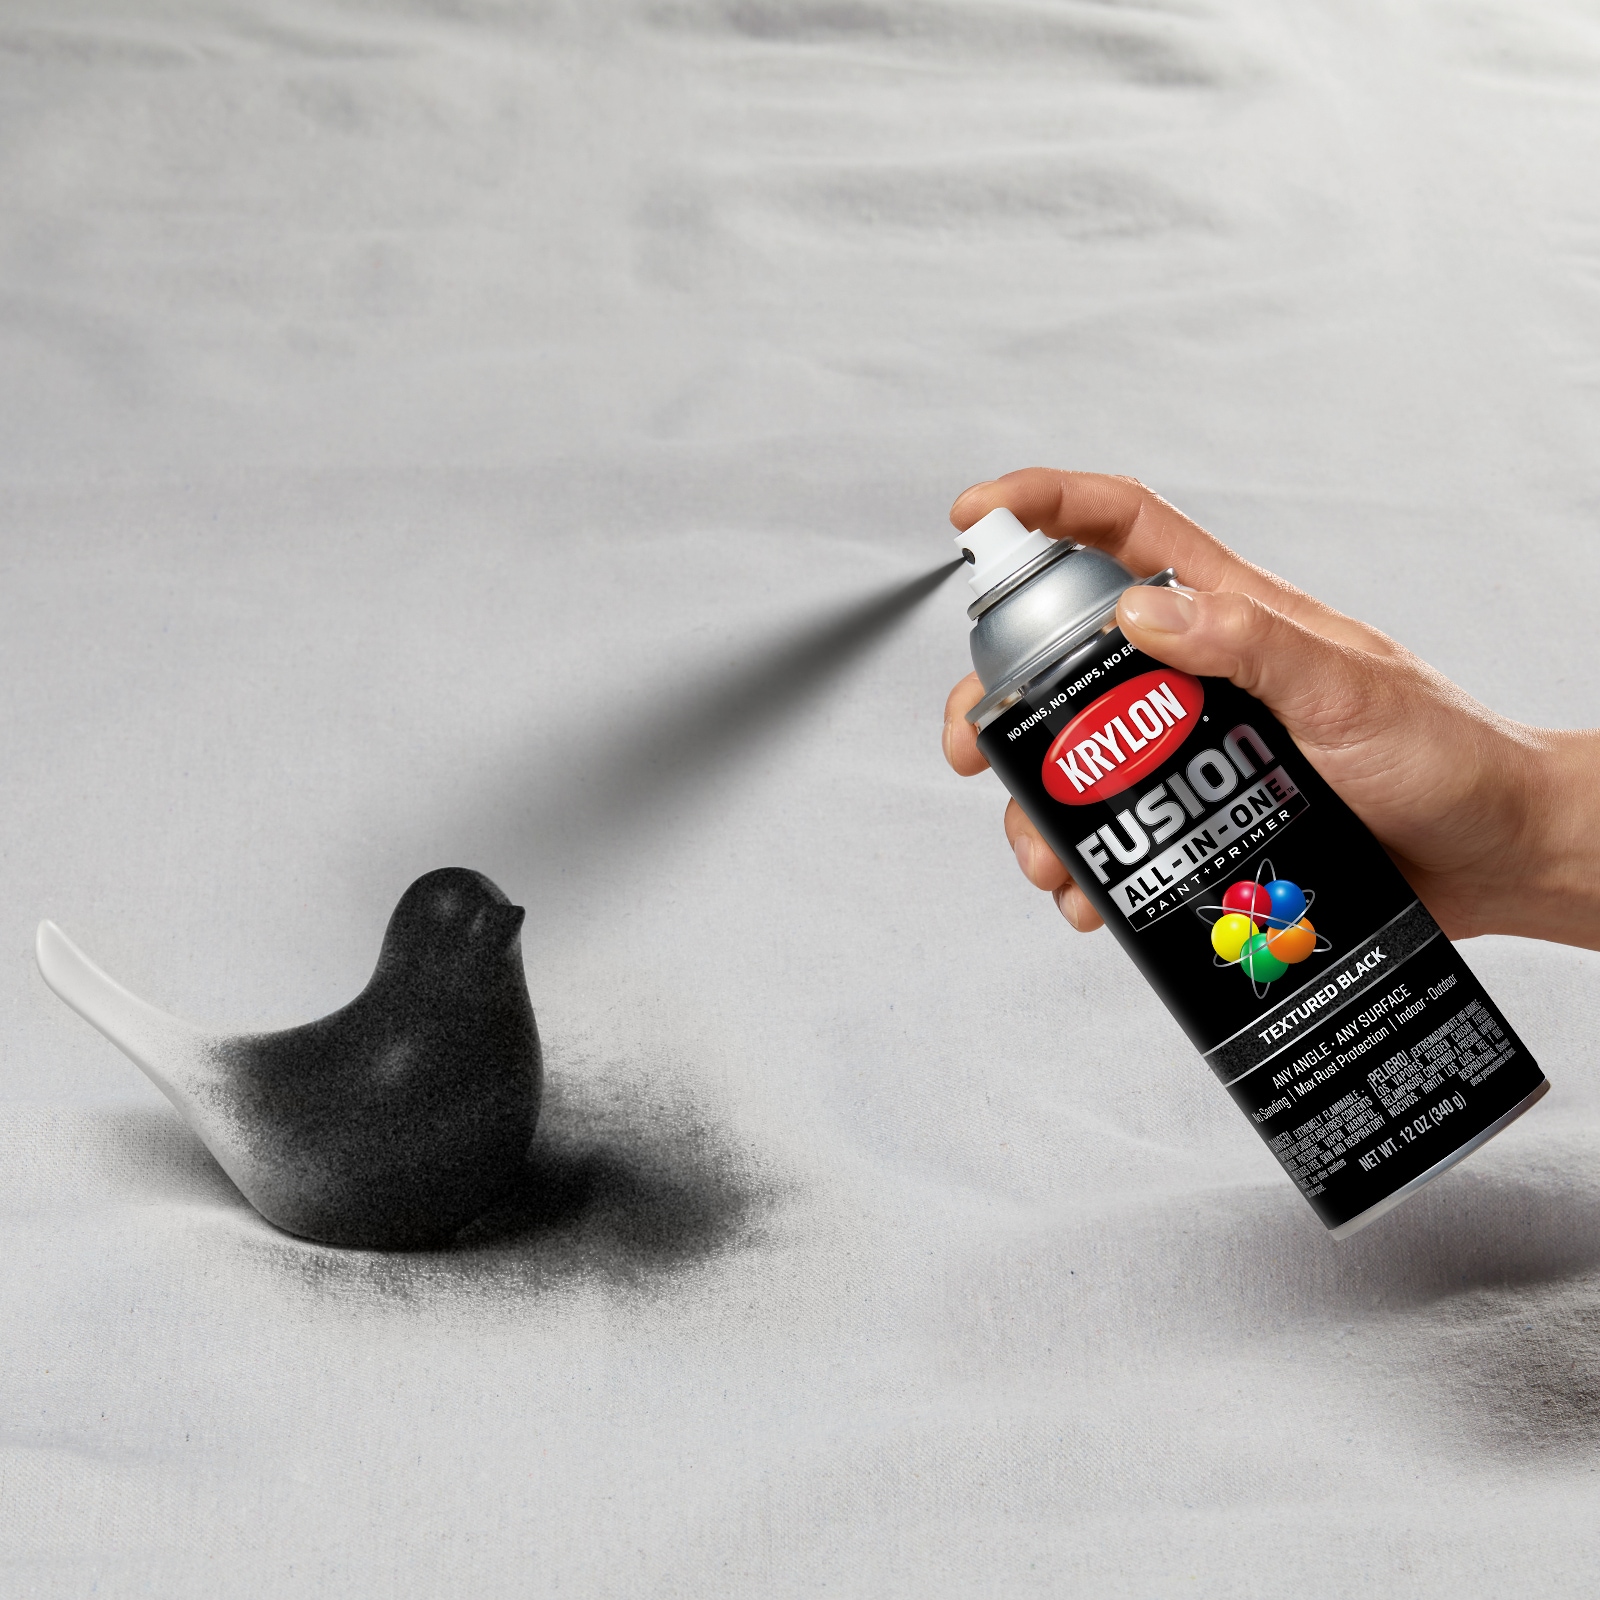 Krylon Acryli-Quik™ Acrylic Lacquer Spray Paint